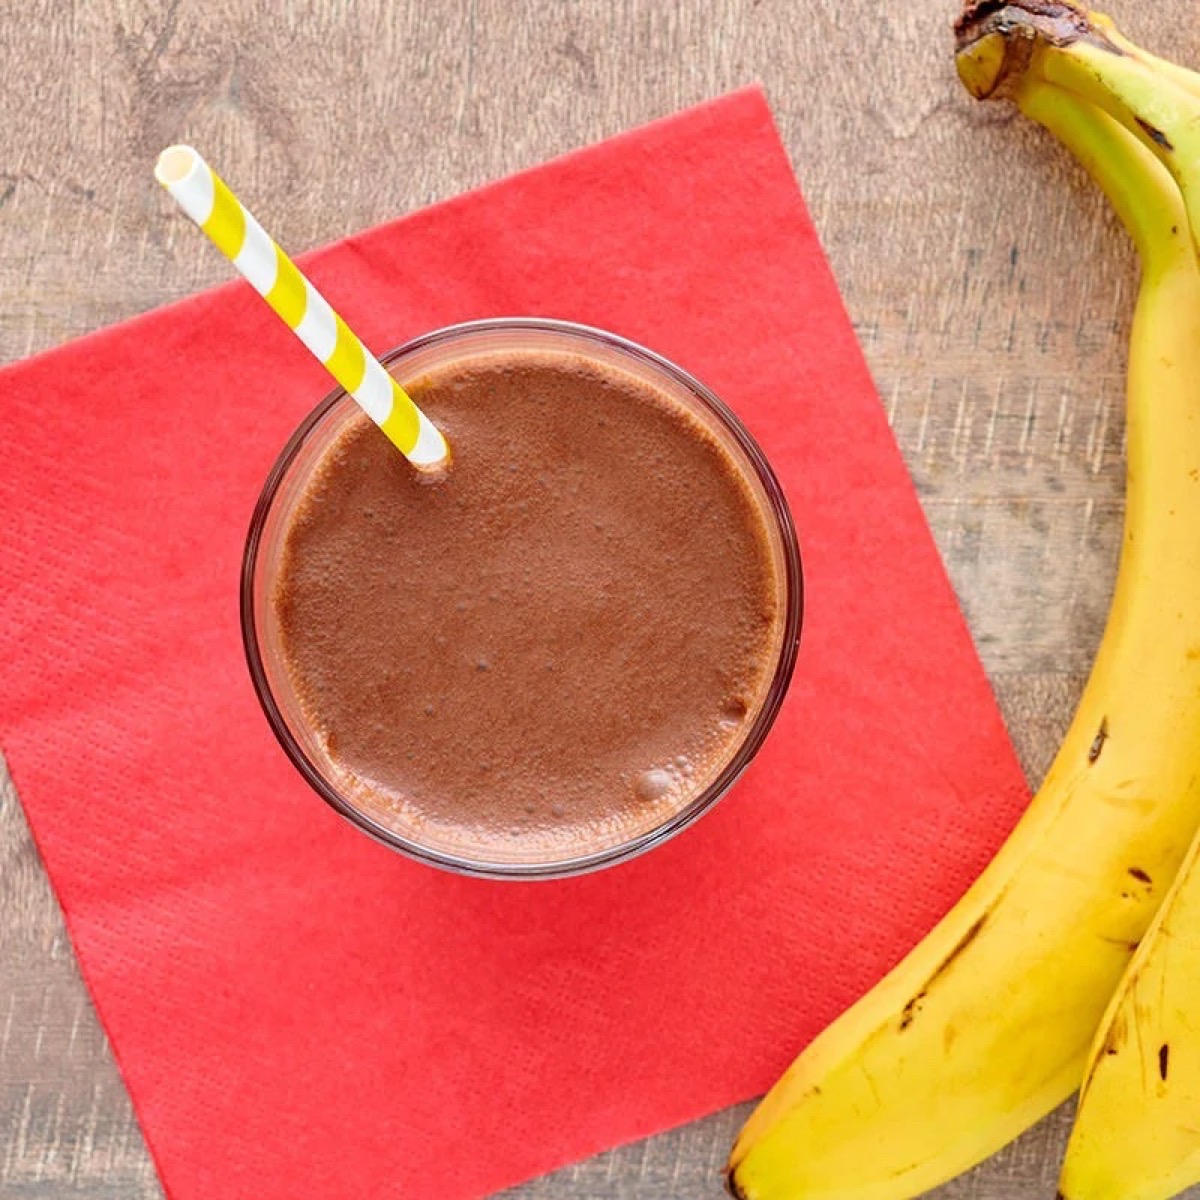 chocolate protein shake next to banana